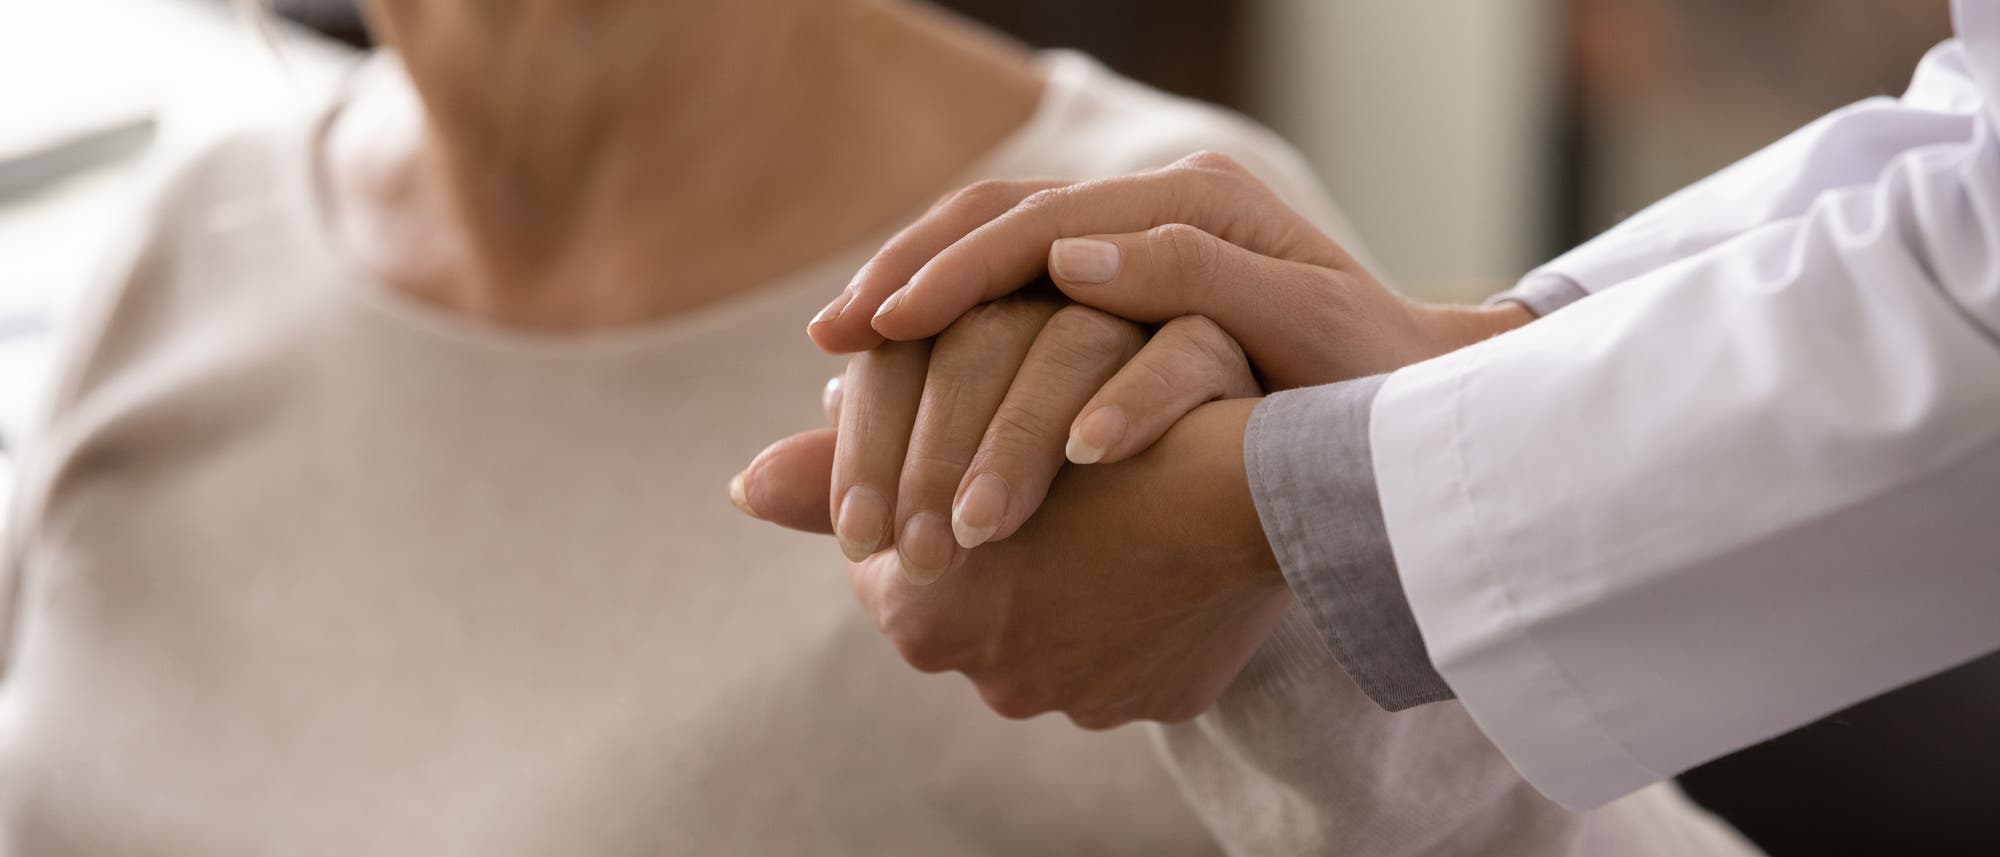 Ein Ärztin stützt mit einer Hand und bedeckt mit ihrer anderen die Hand einer Patientin.